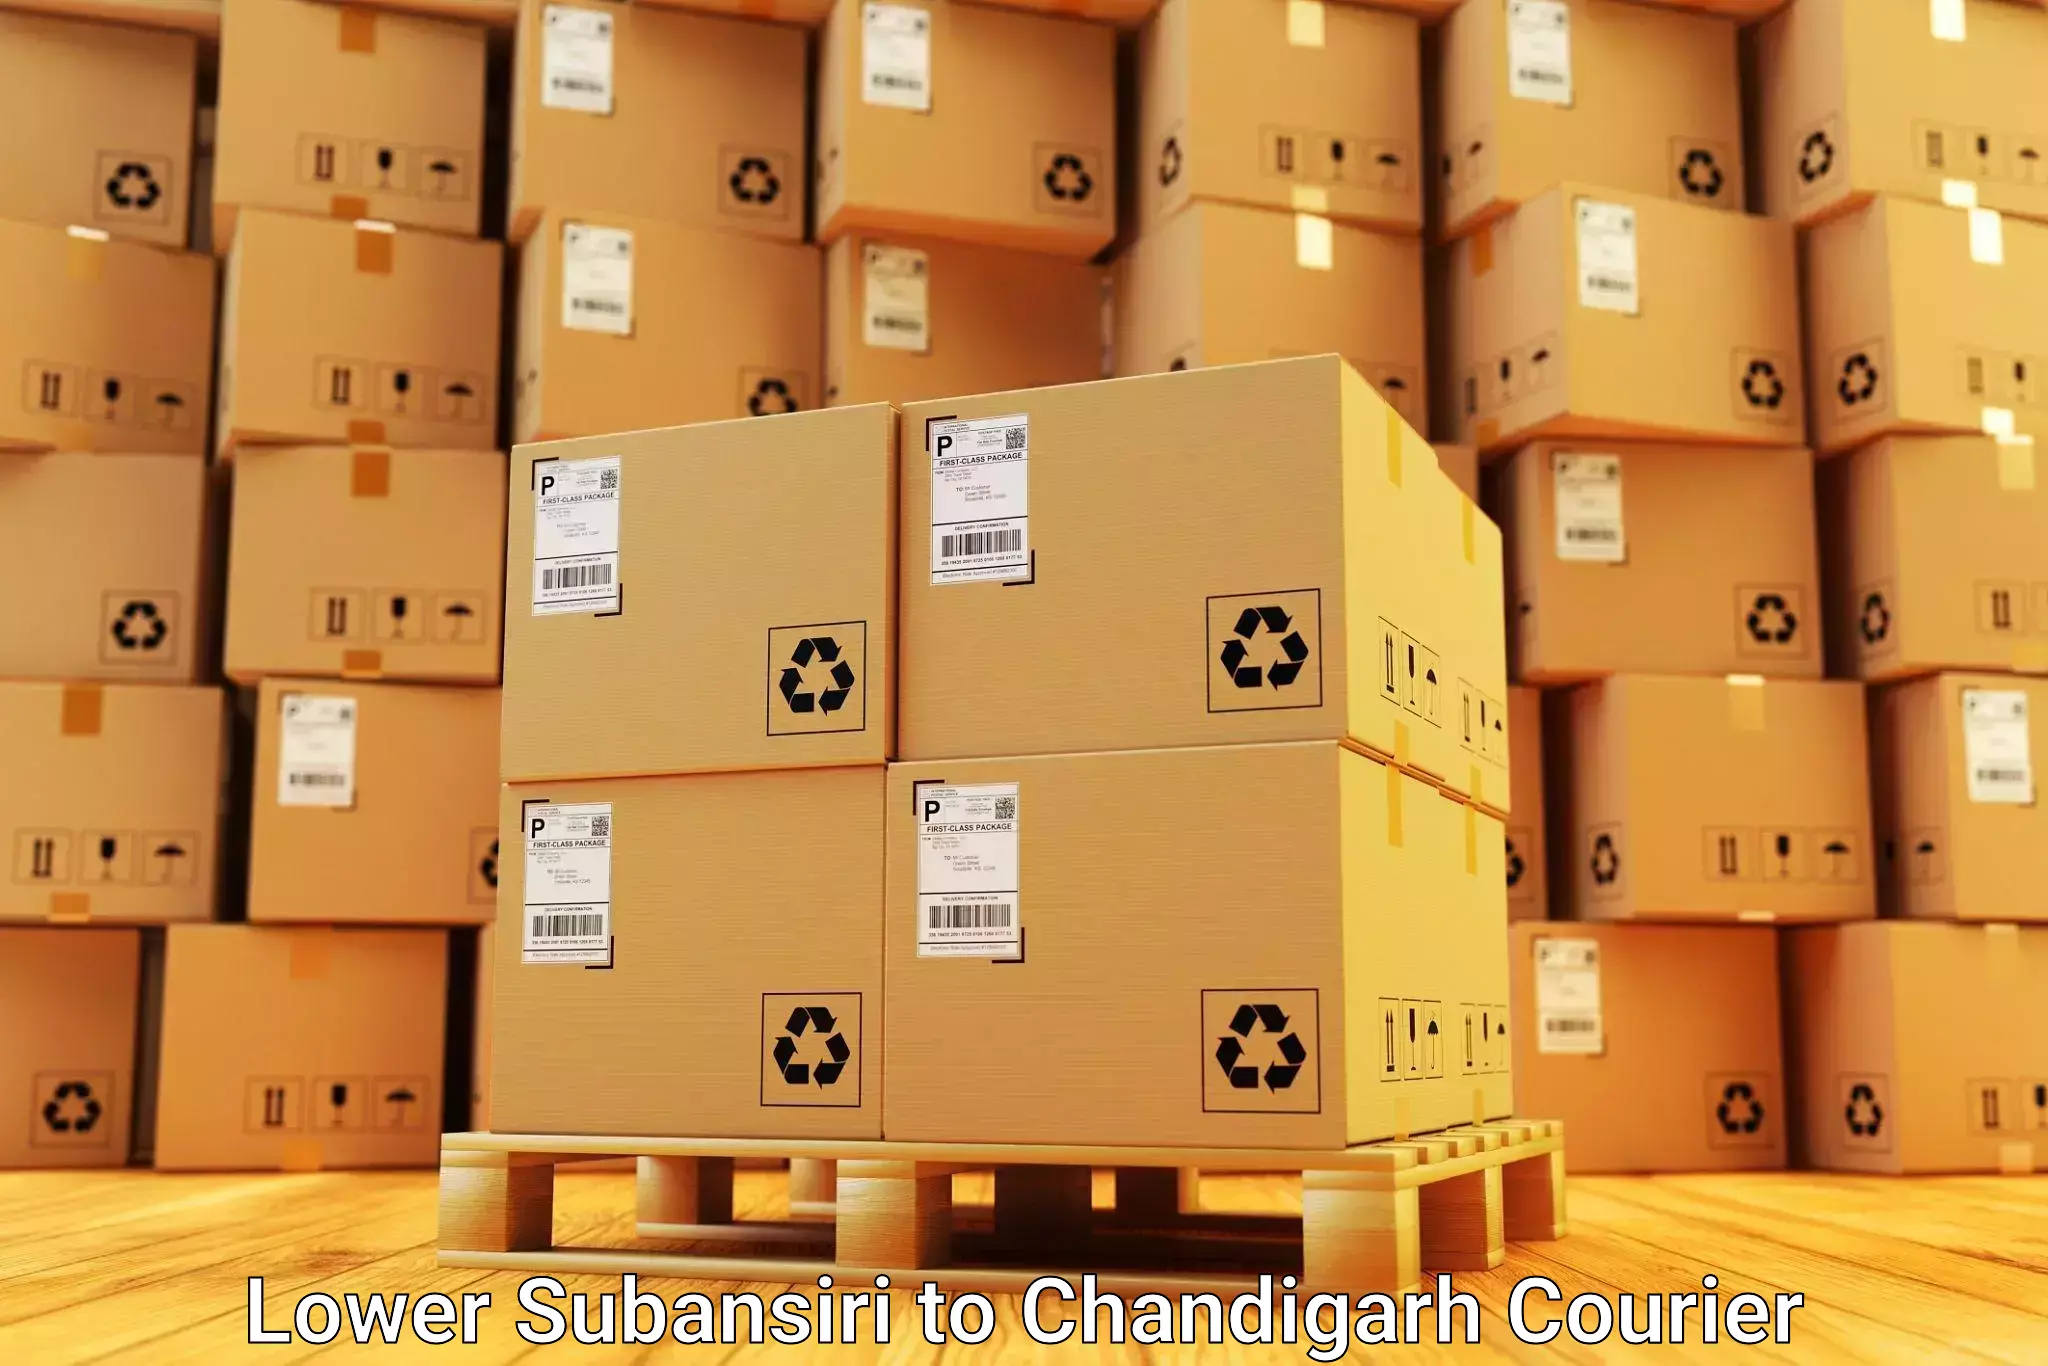 Furniture moving experts Lower Subansiri to Chandigarh